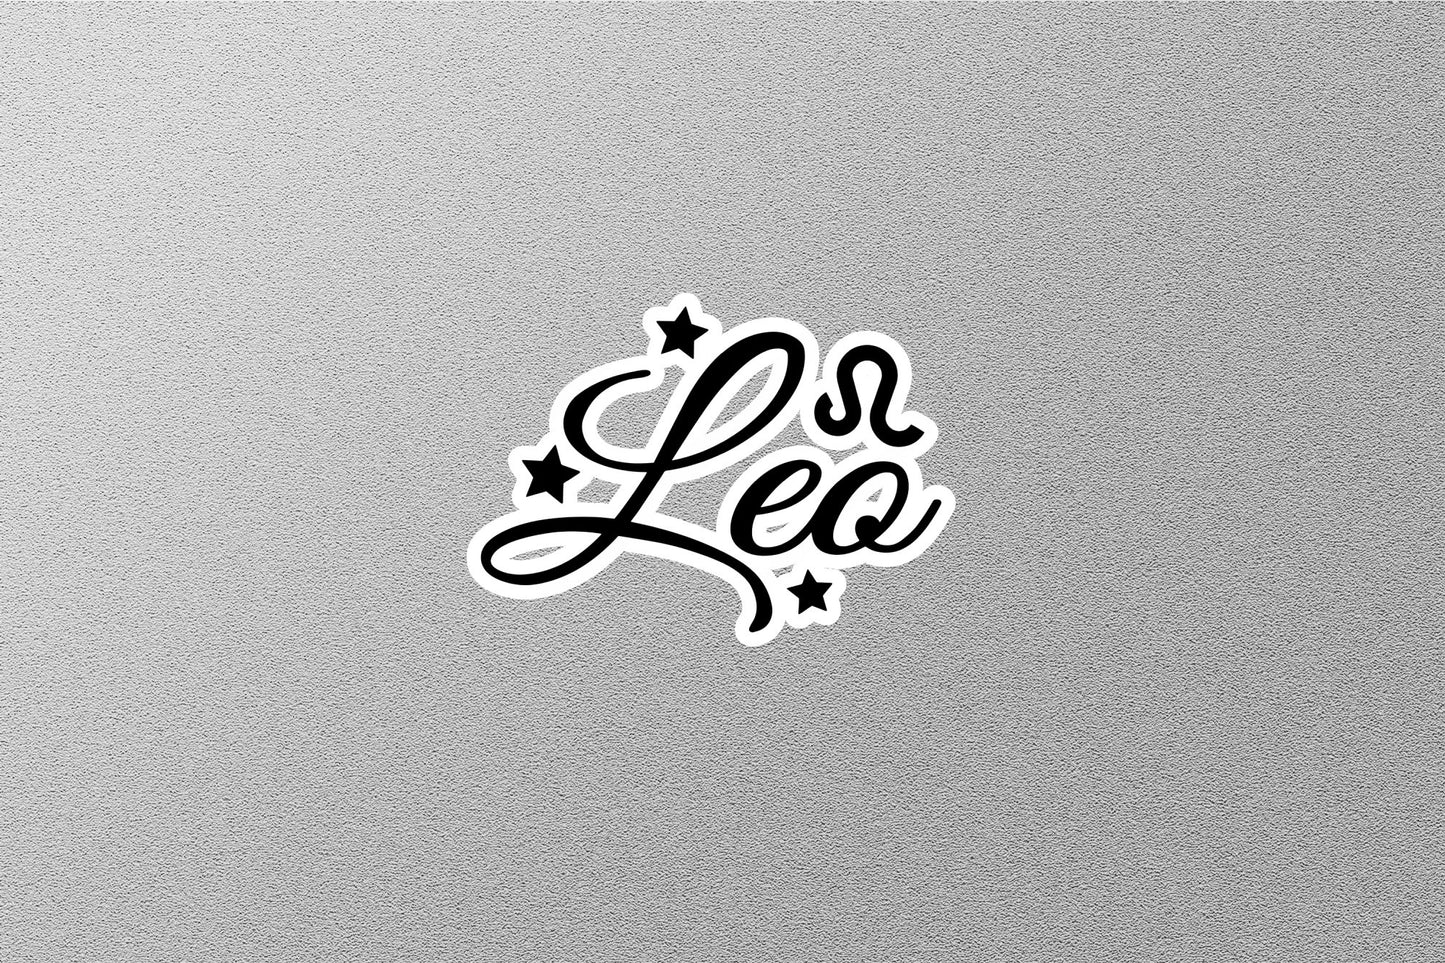 Leo Zodiac Sticker